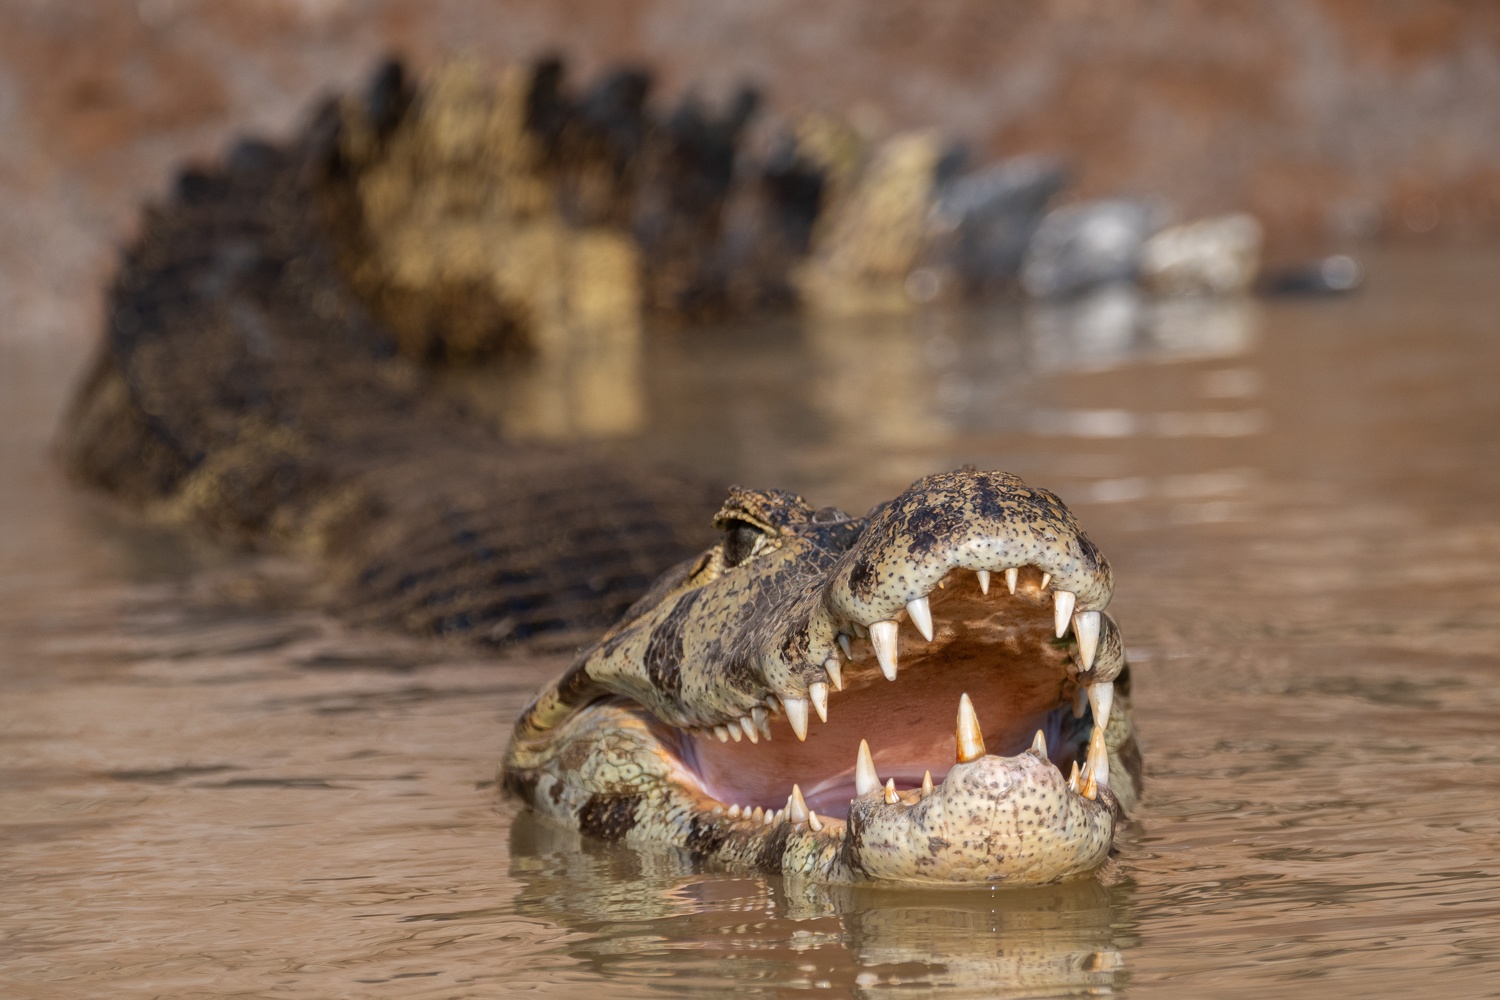 Yacare caiman, Pantanal, Brazil.